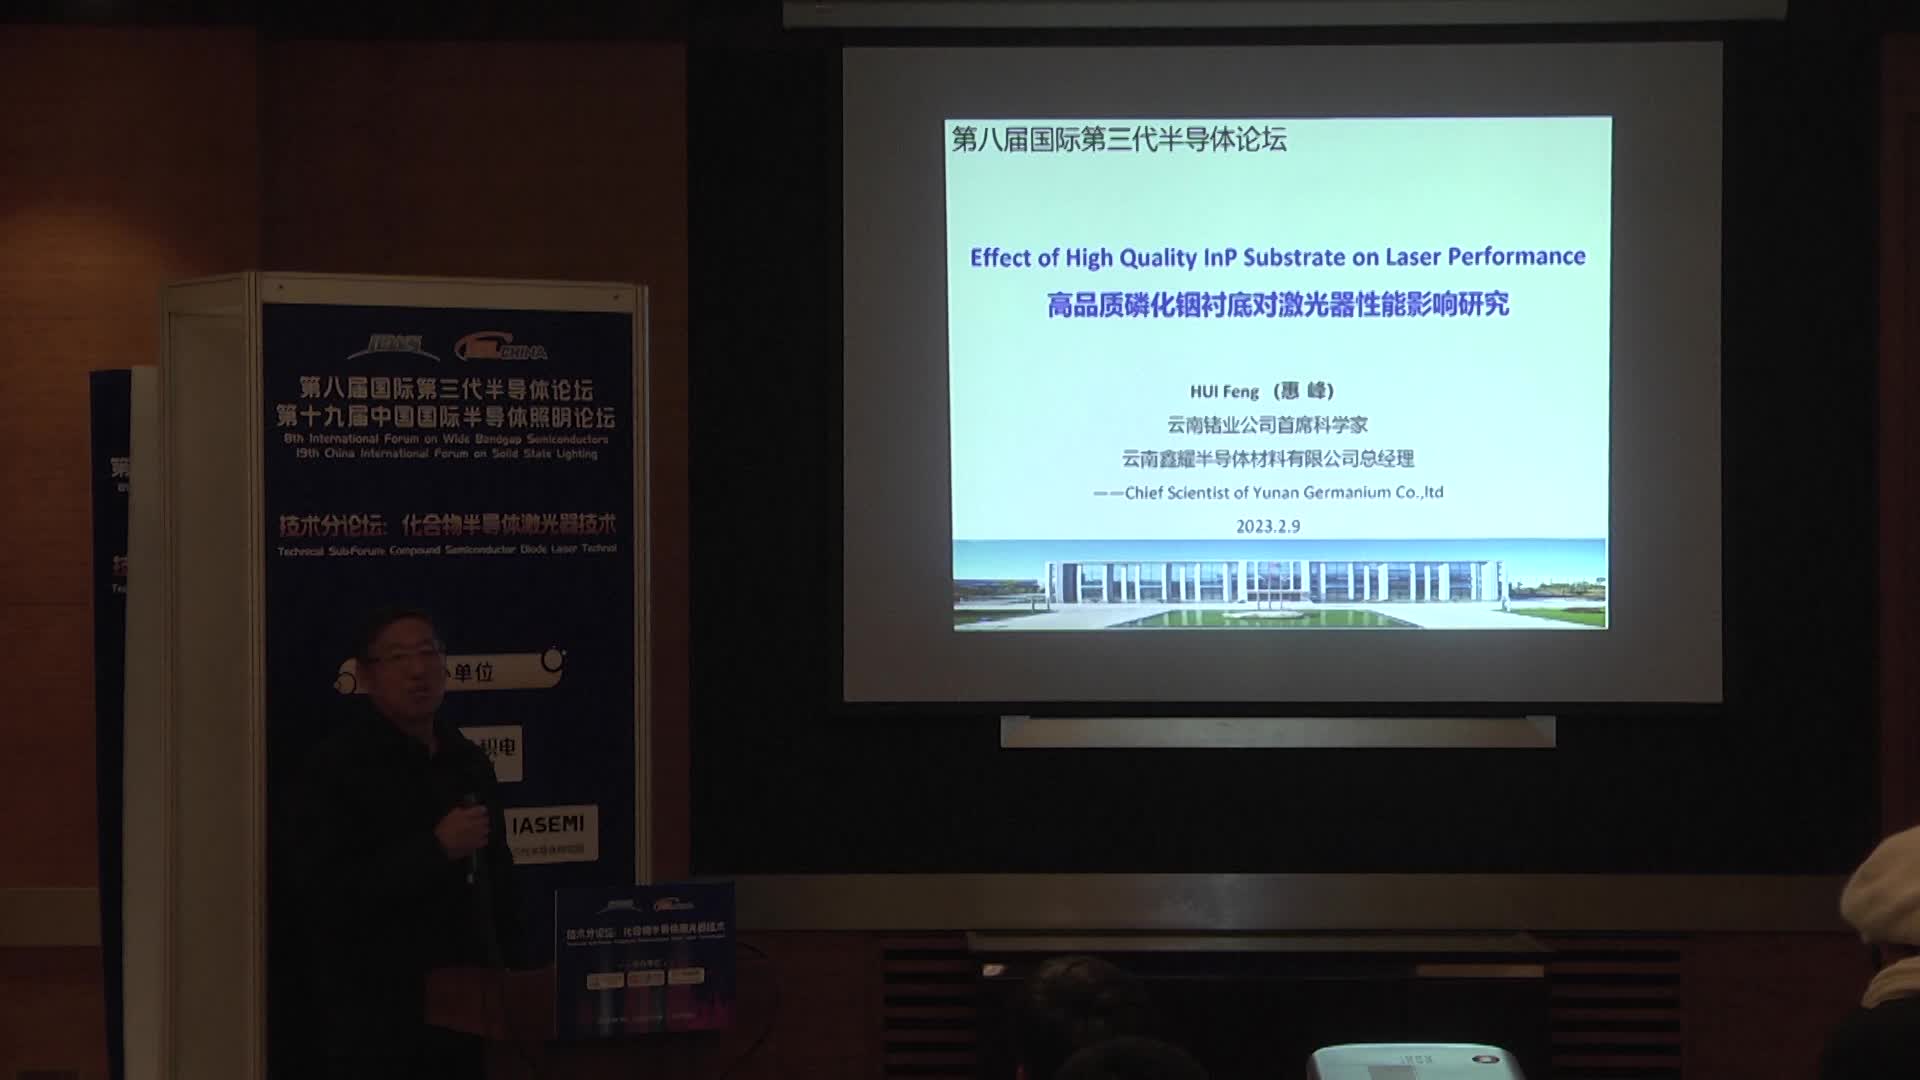 云南锗业公司首席科学家惠峰：高品质磷化铟衬底对激光器性能影响研究